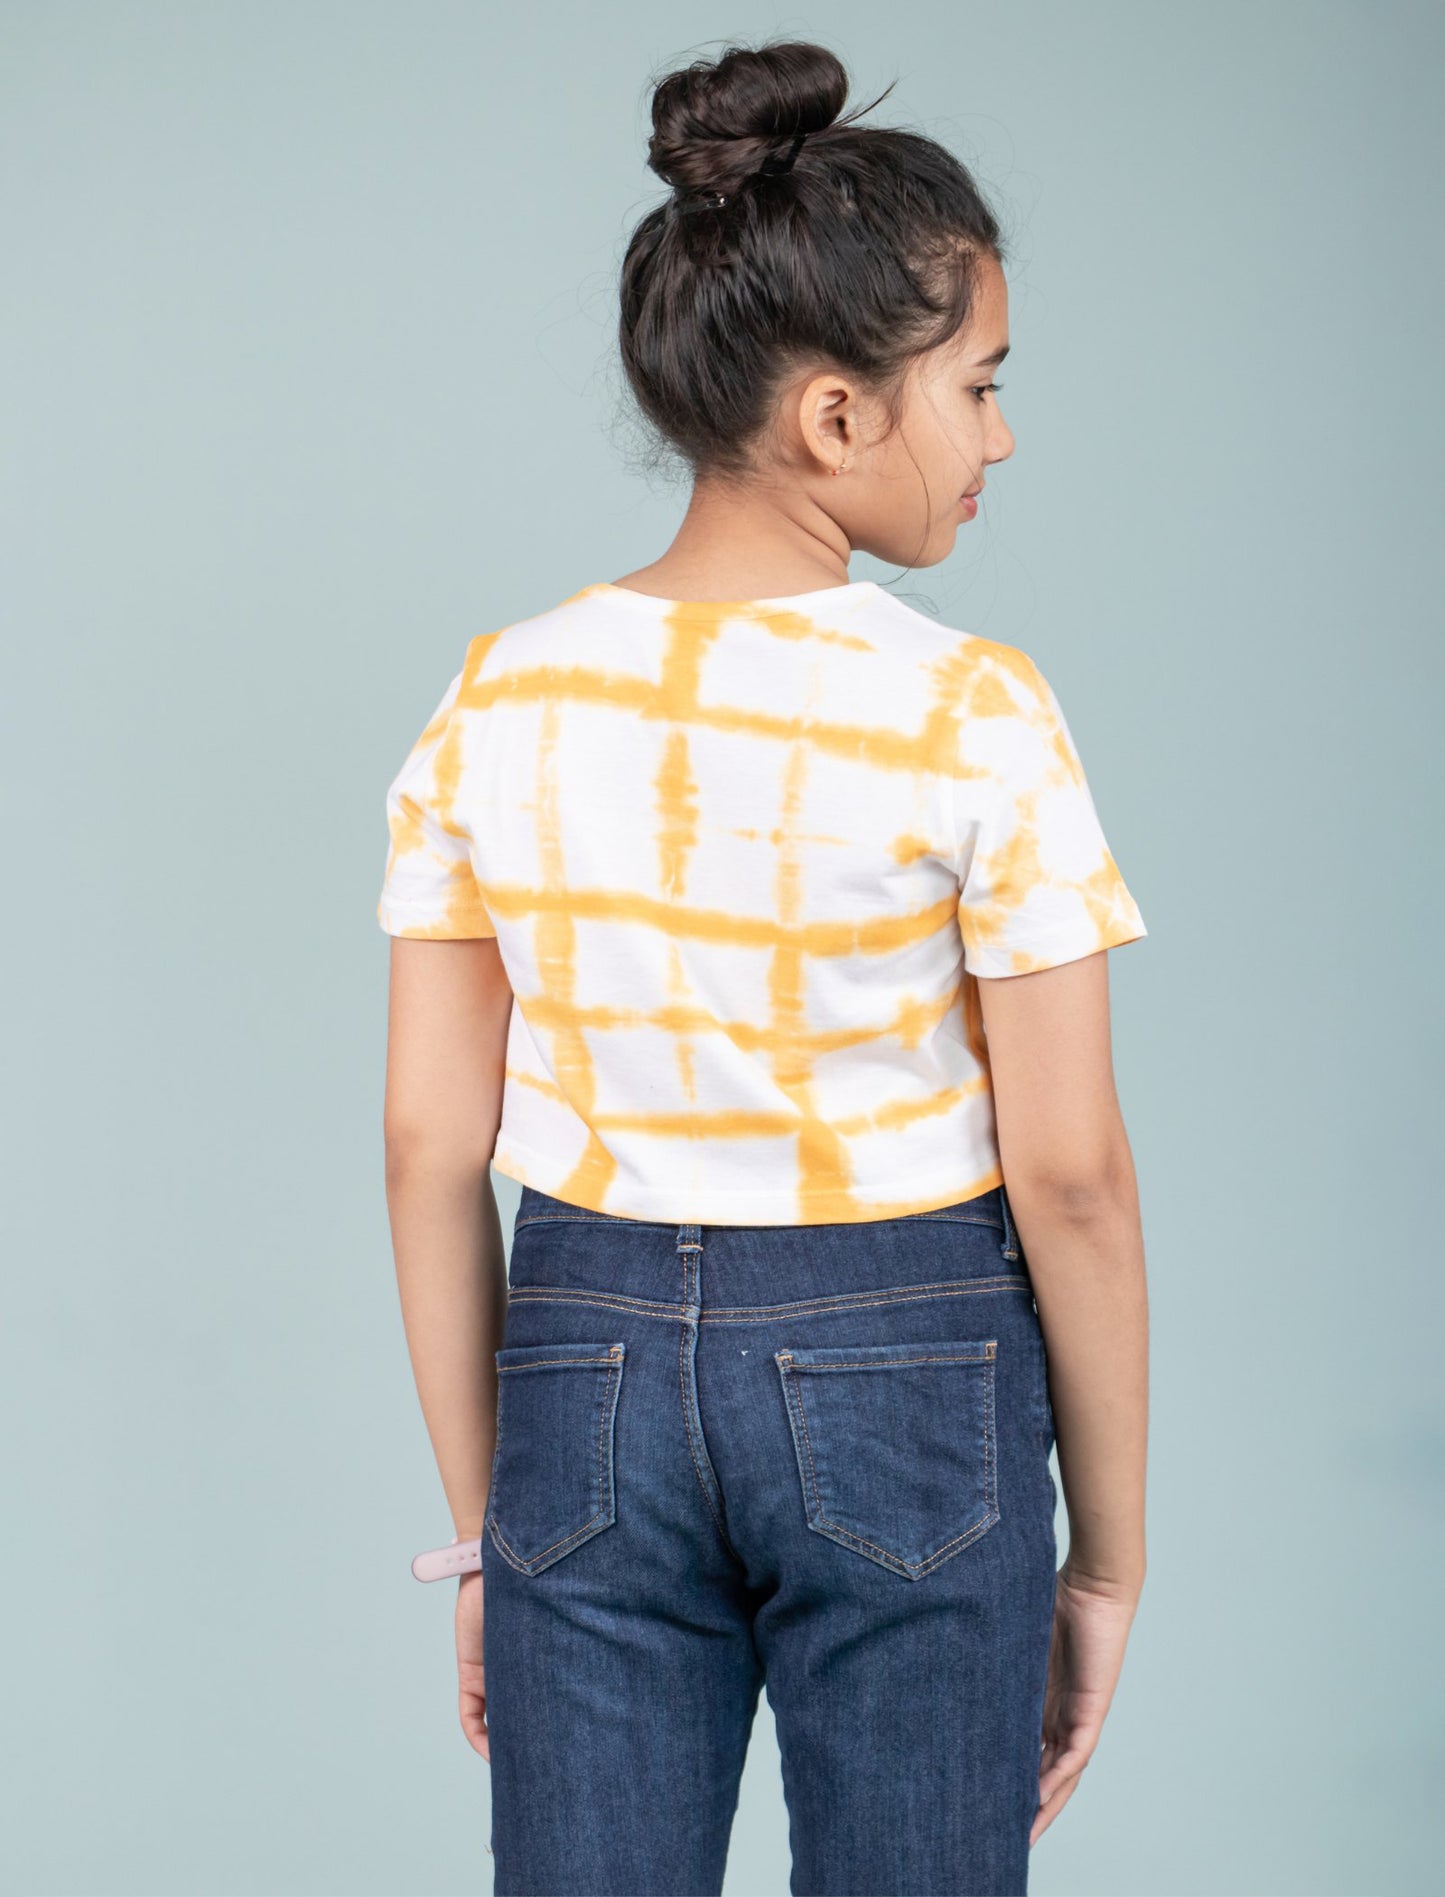 Girls Kids Tie-Dye Cotton Summer Crop Top T-Shirt (Iced Mango)